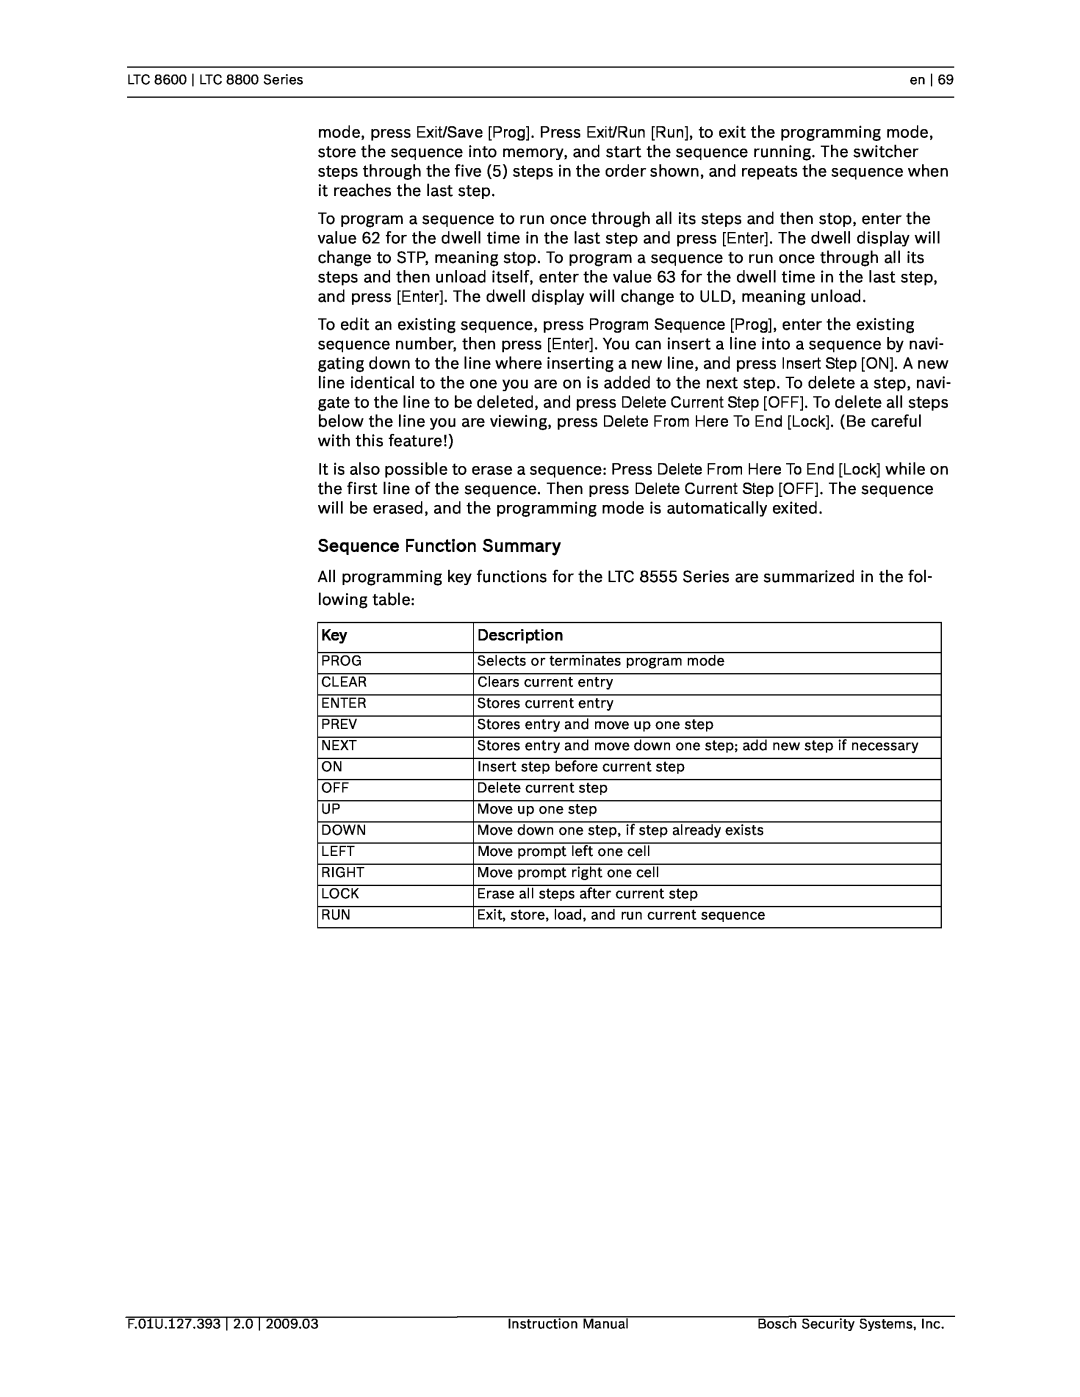 Bosch Appliances LTC 8800, LTC 8600 instruction manual Sequence Function Summary, Description 